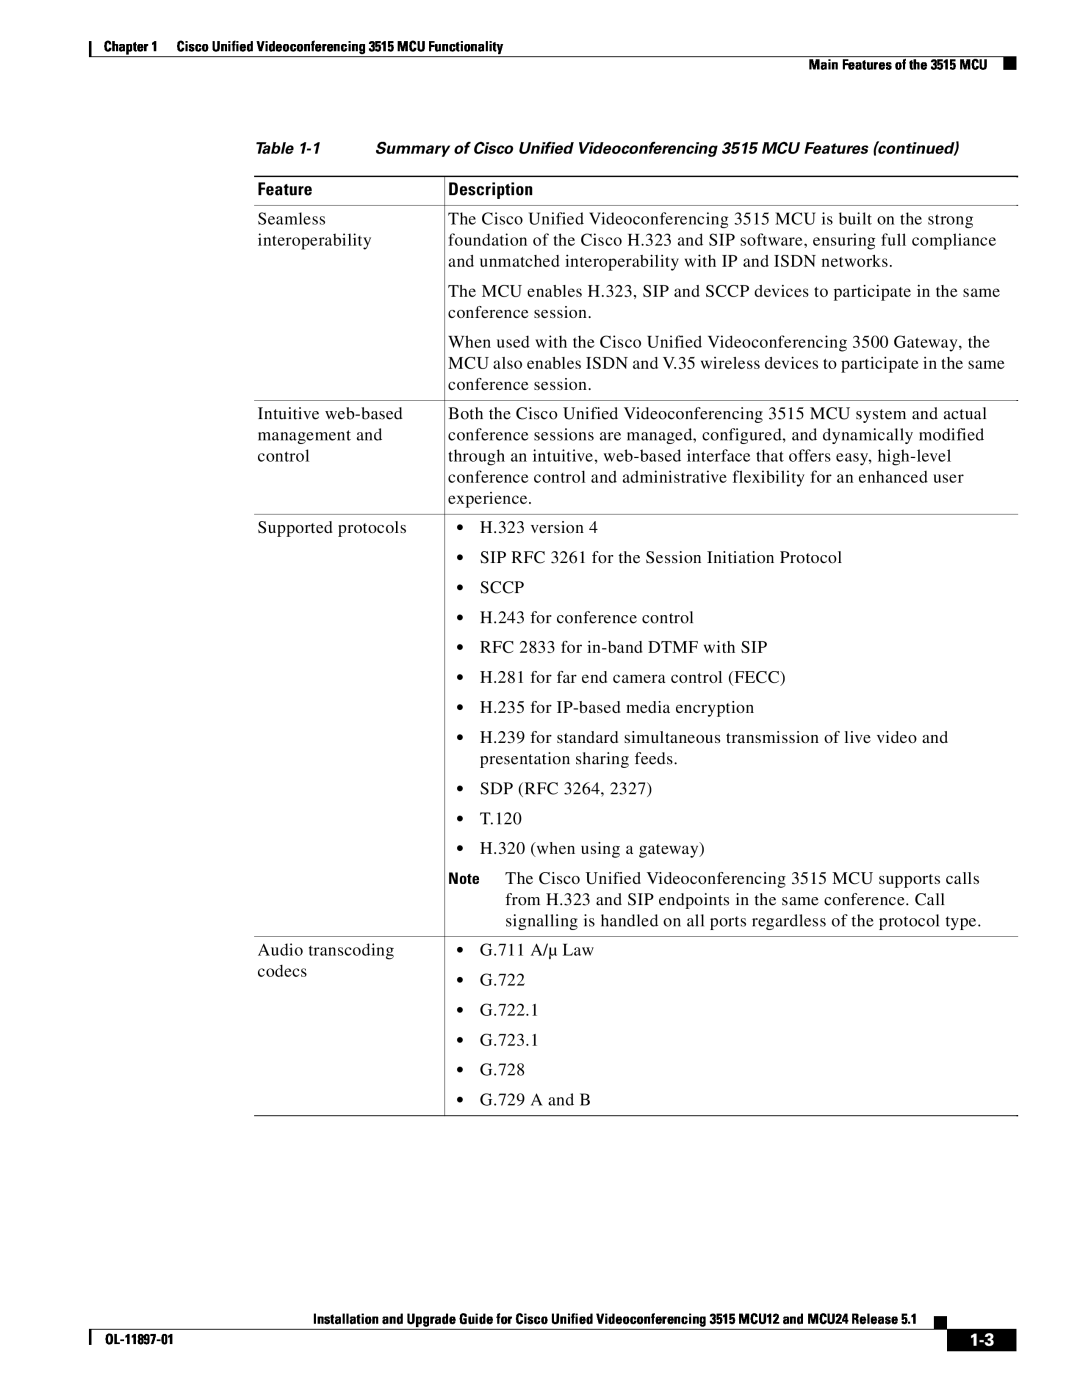 Cisco Systems MCU24 manual Feature, Description 